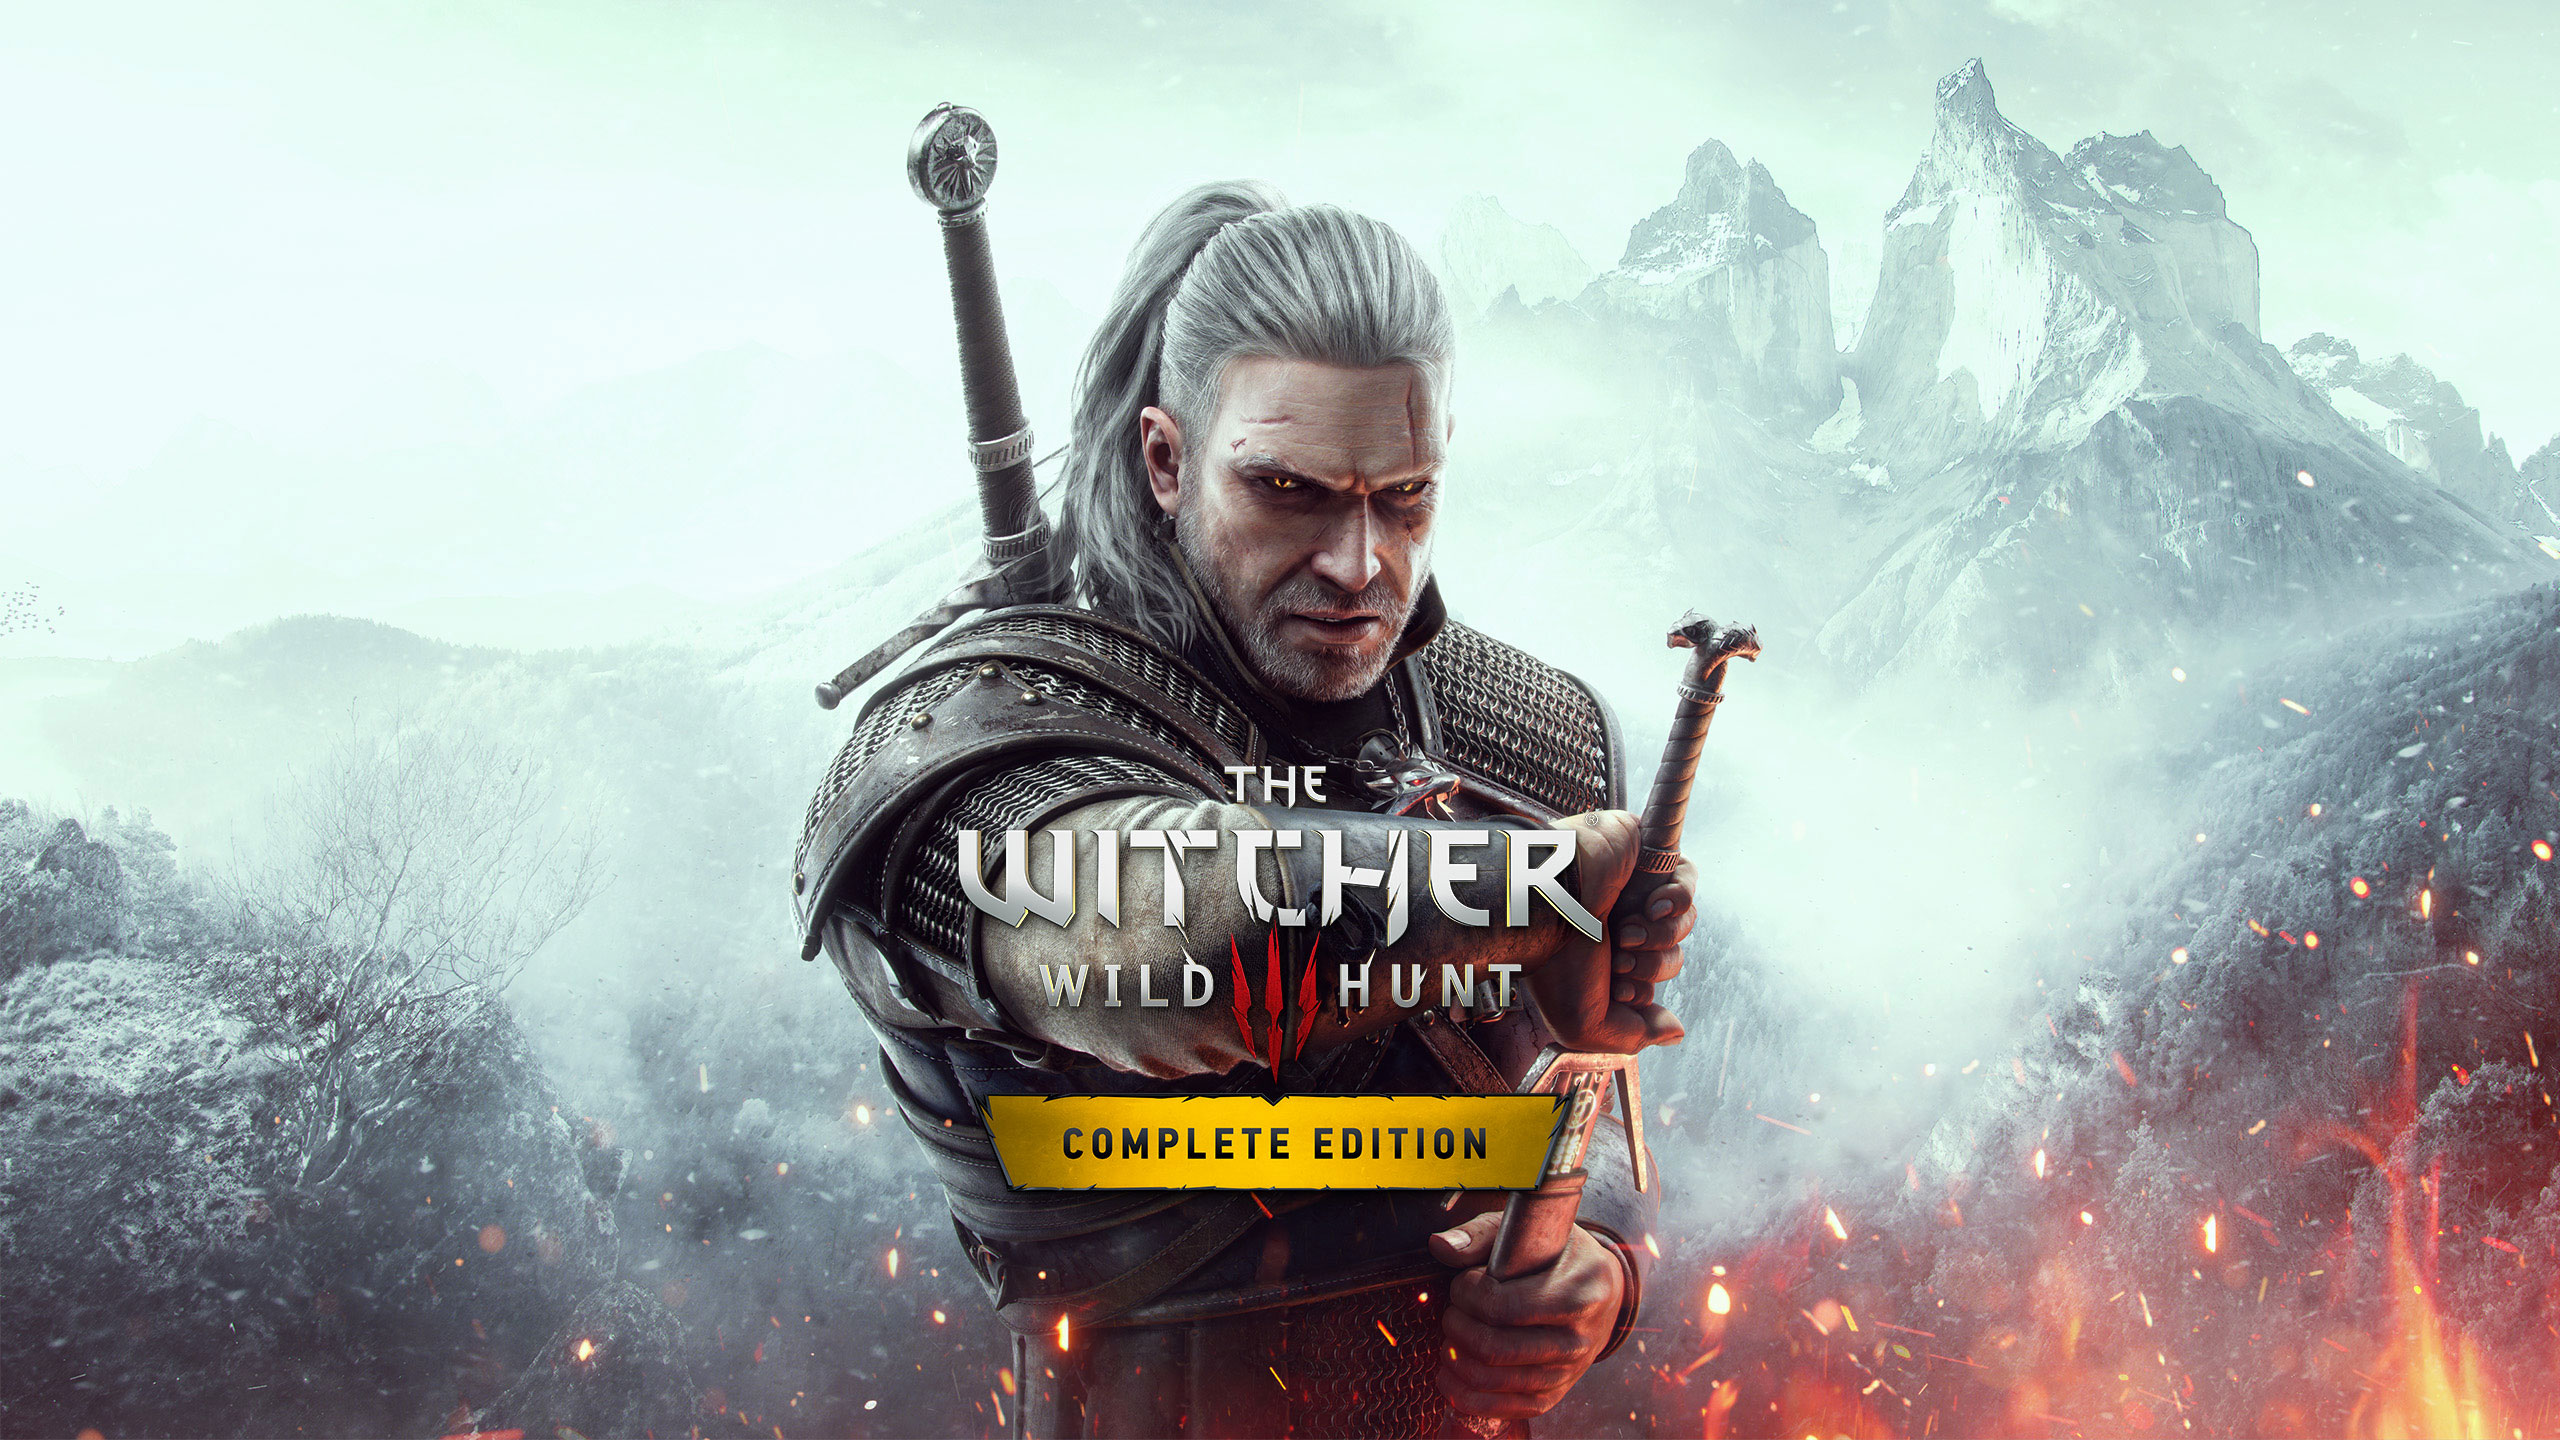 The Witcher 3: Wild Hunt - Metacritic